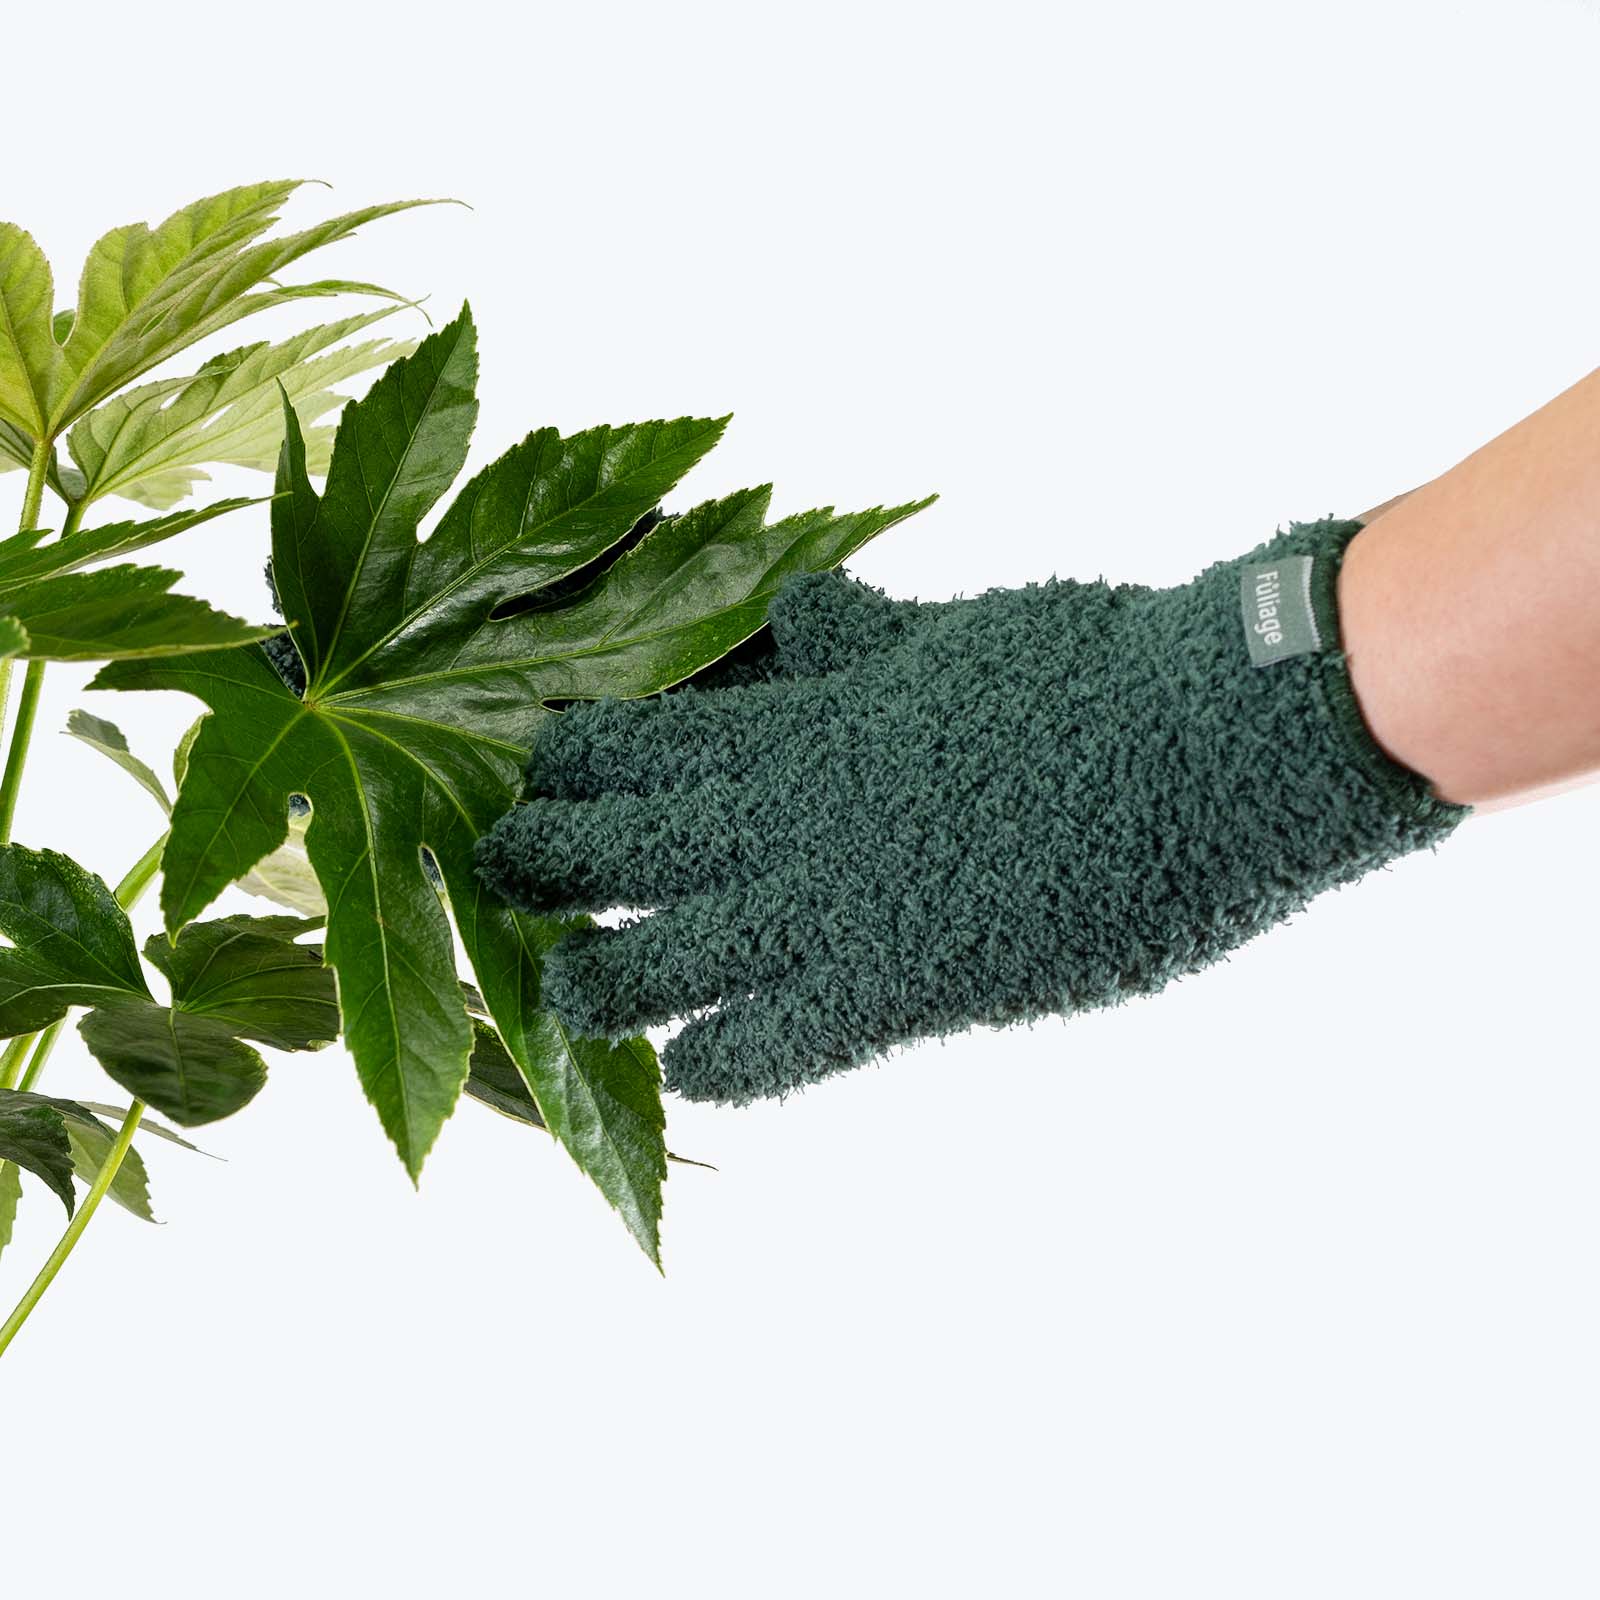 Handmade Microfiber Gloves for Dusting Plants 